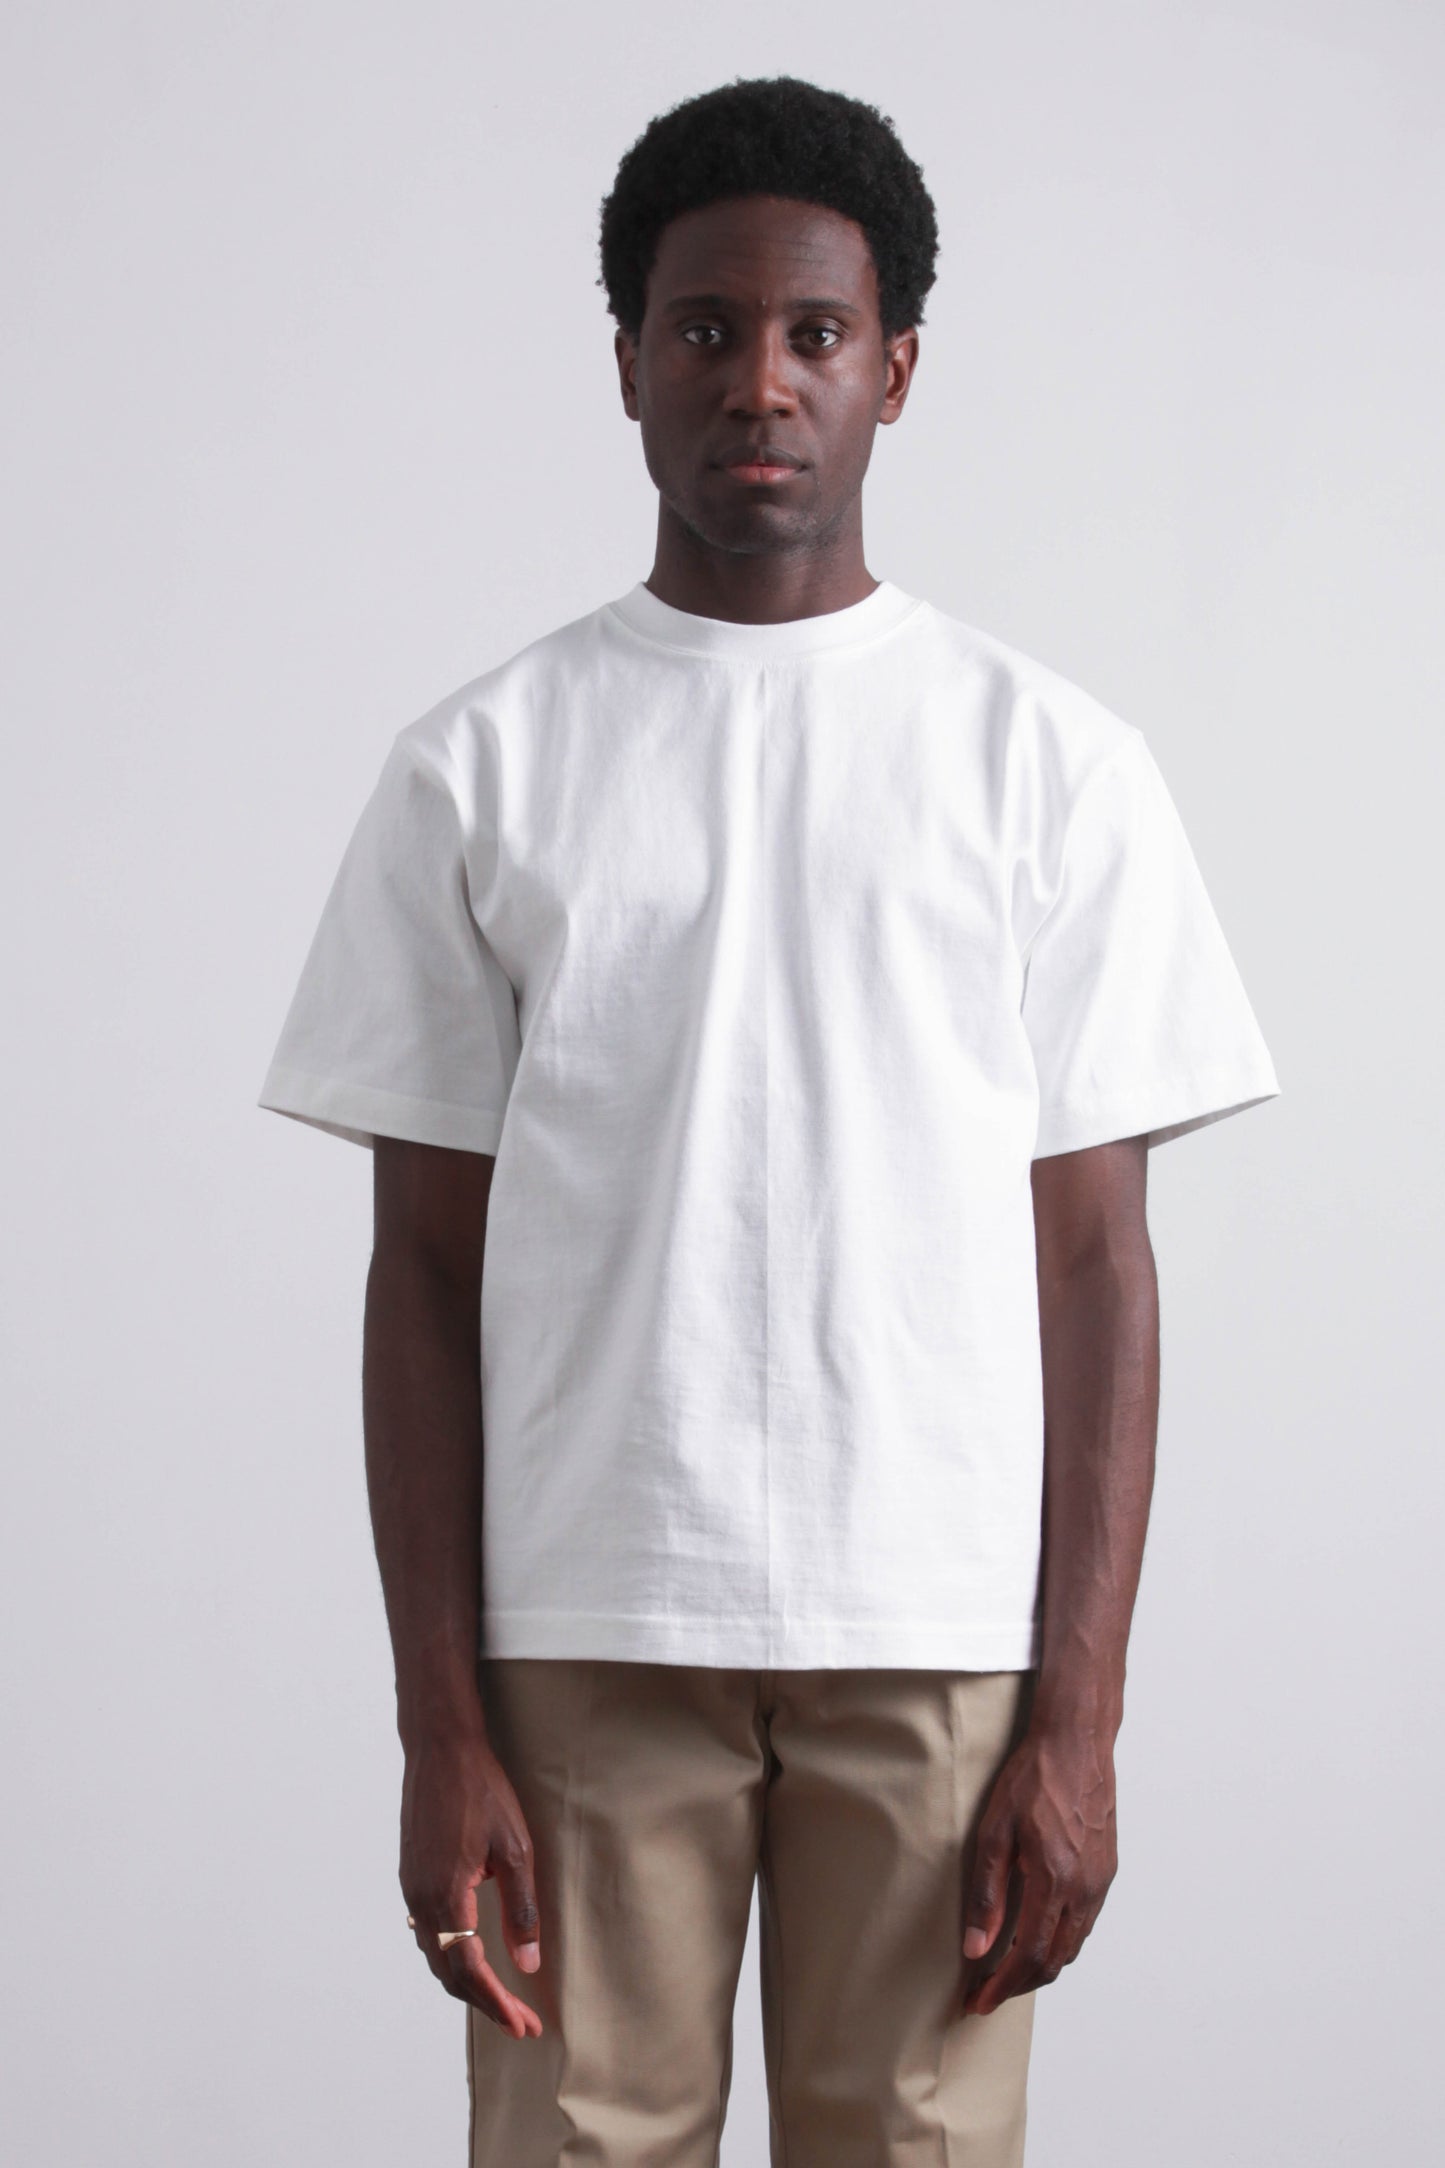 CAMBER White T-shirt Max-weight suuupply – - USA